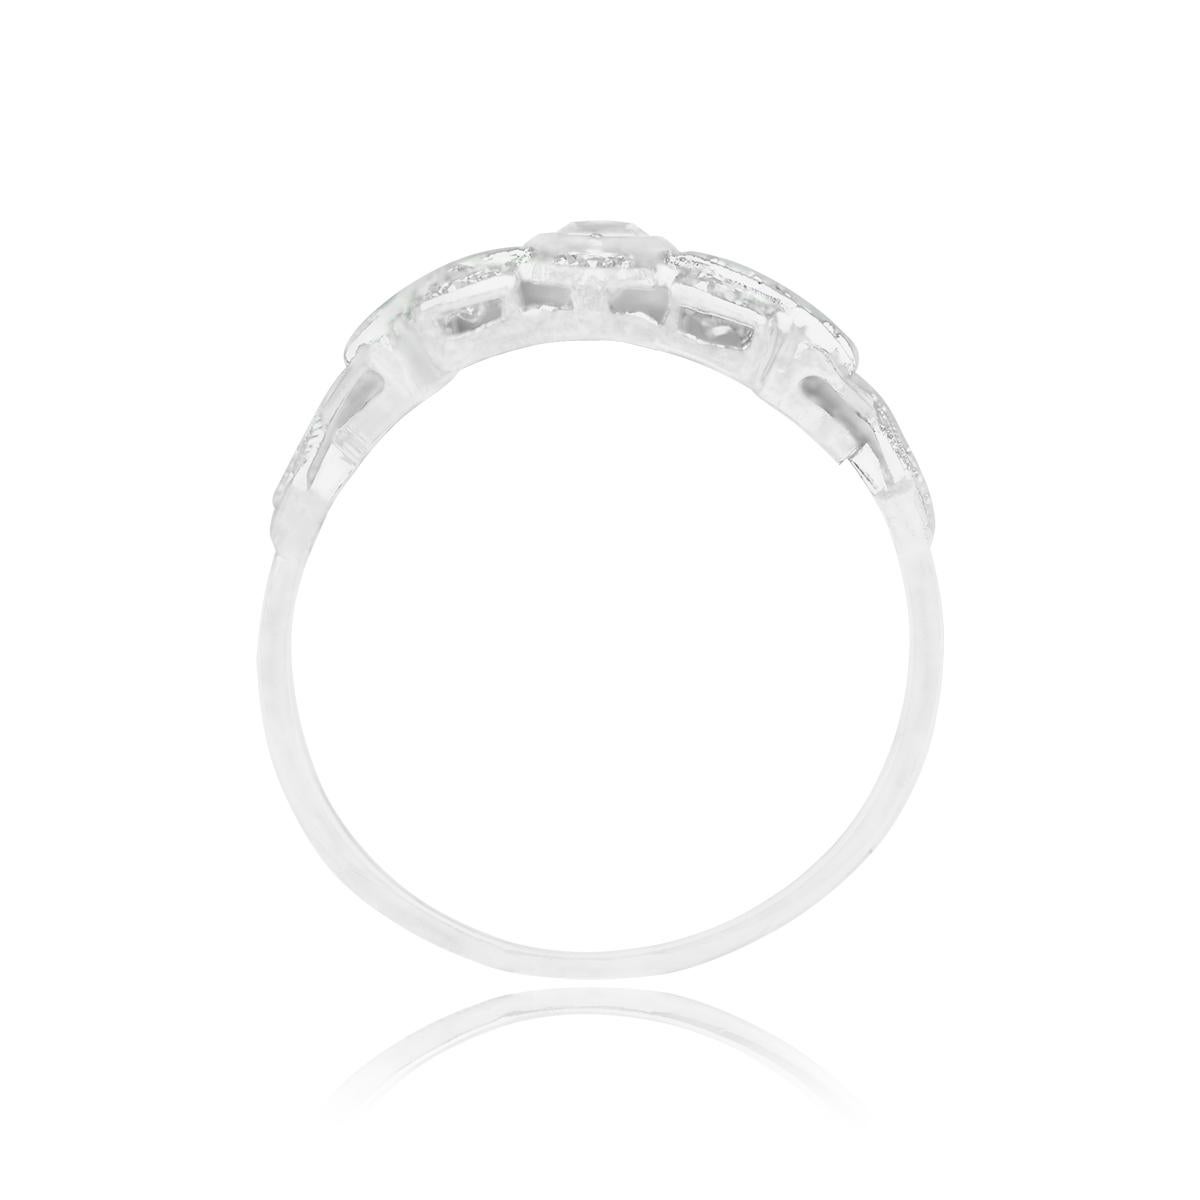 Art Deco Antique 0.30ct Marquise Cut Diamond Engagement Ring, I Color, Platinum